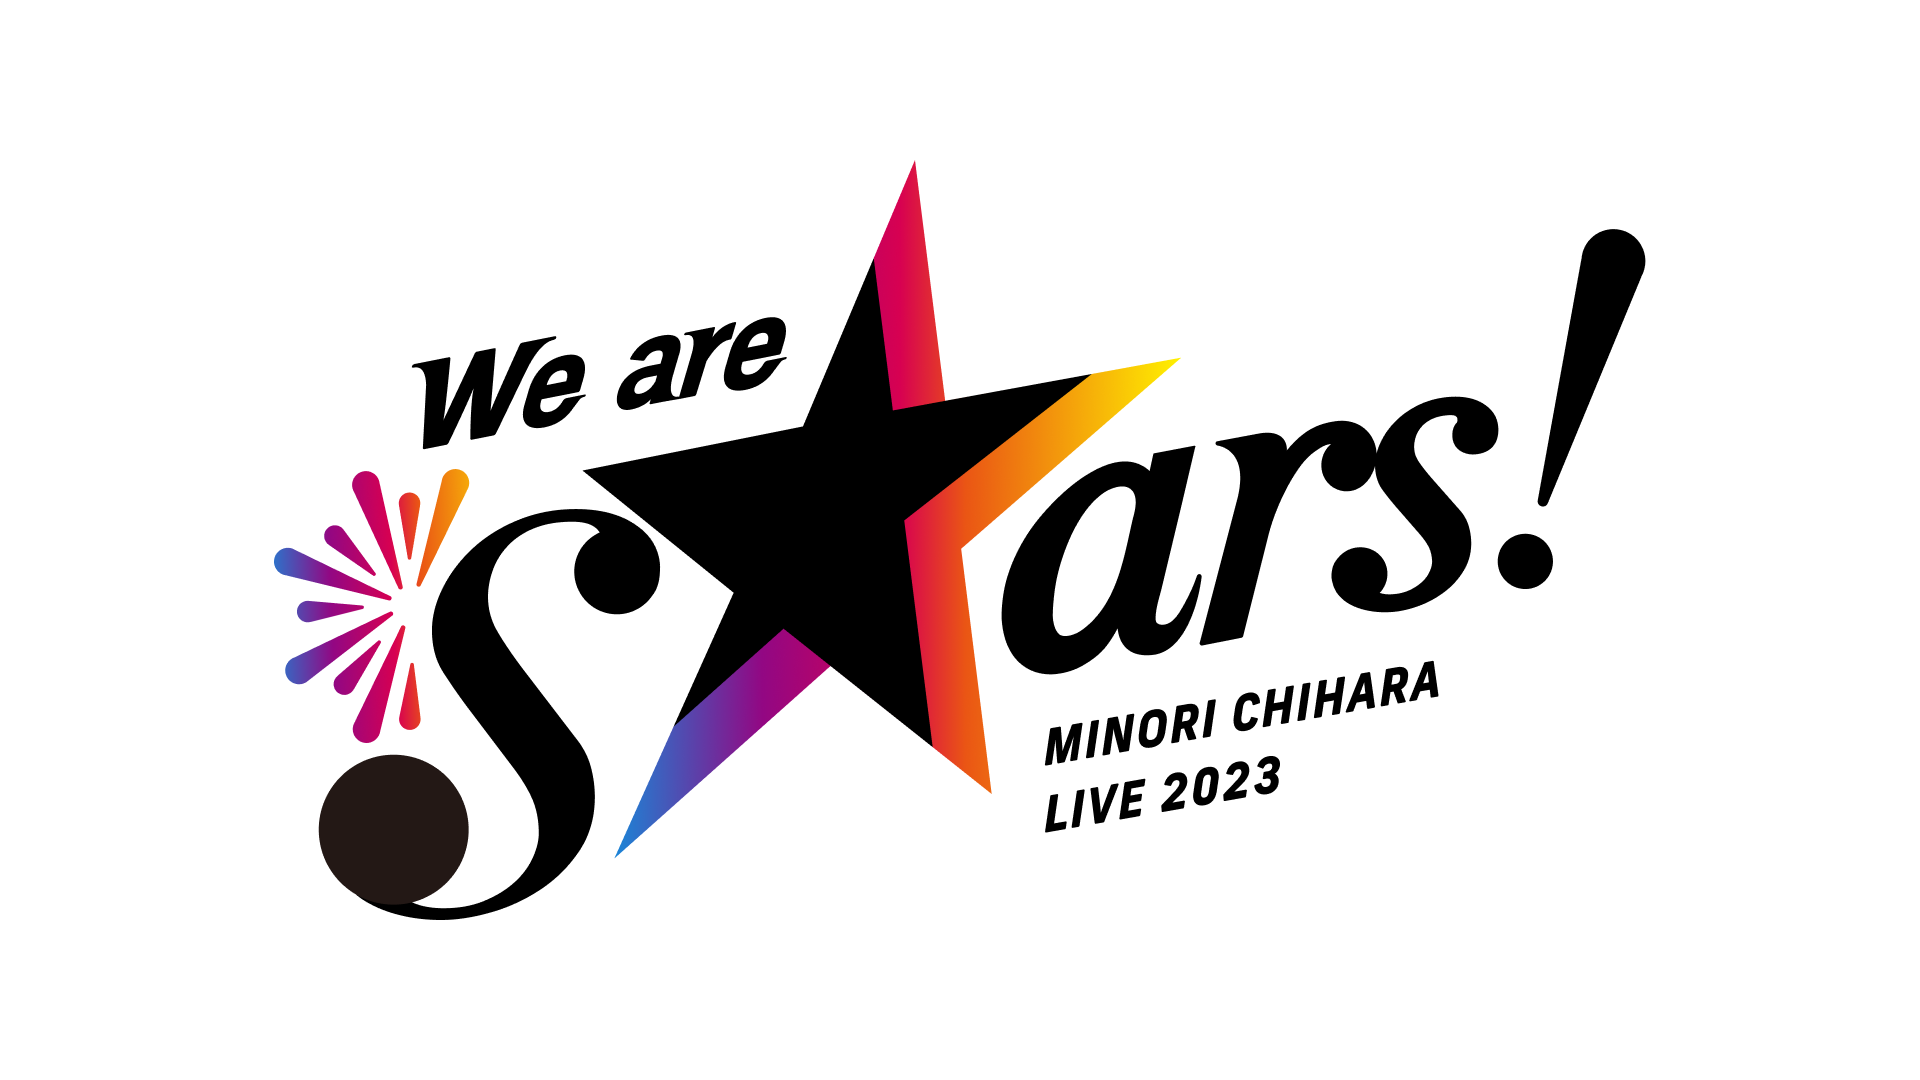 茅原実里『We are stars!』